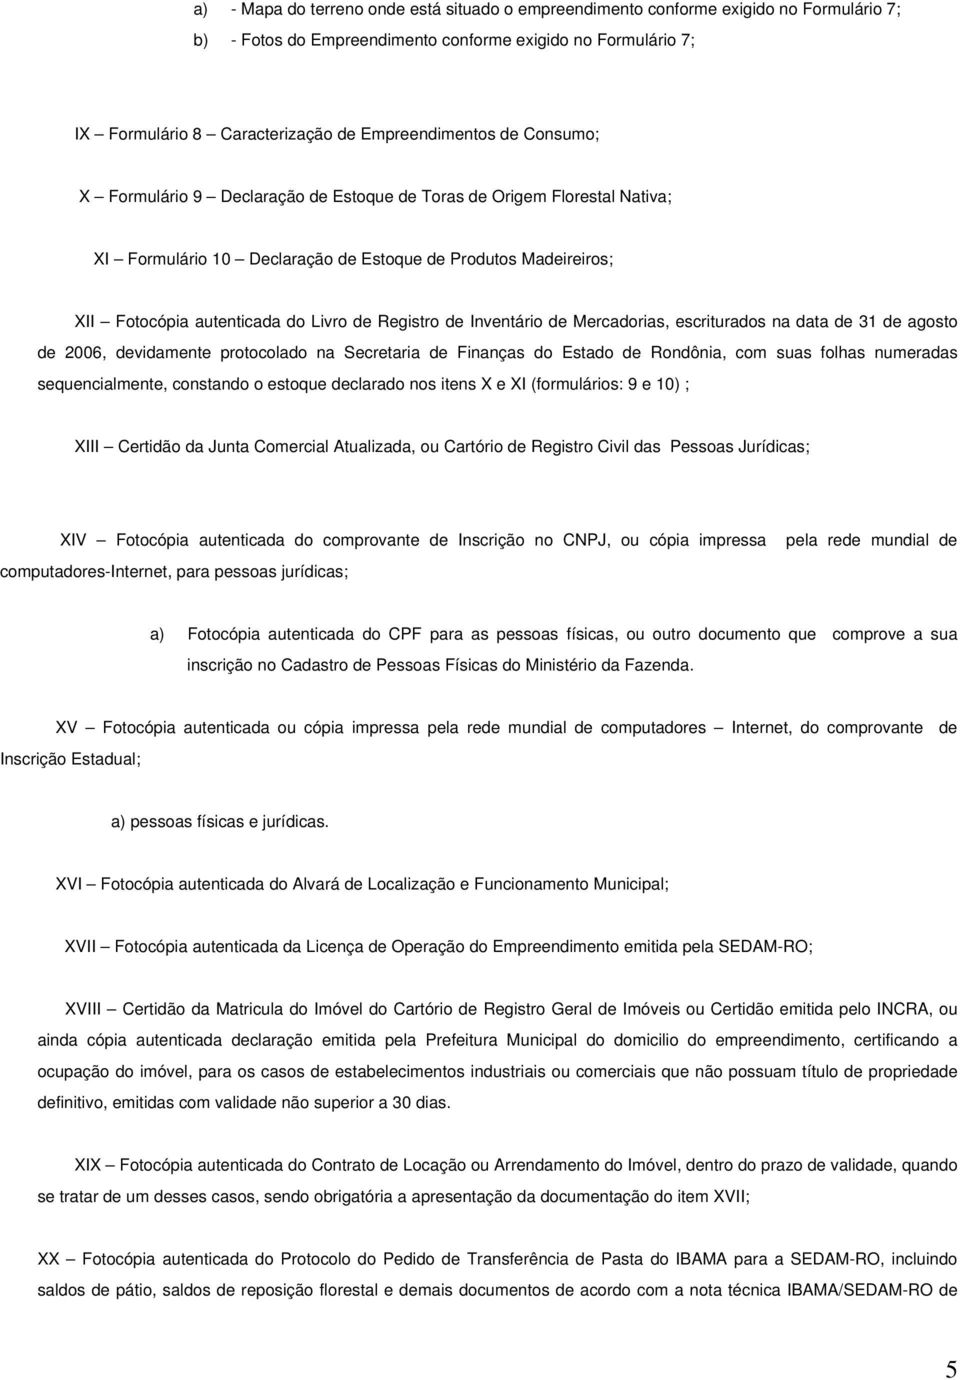 Livro de Registro de Inventário de Mercadorias, escriturados na data de 31 de agosto de 2006, devidamente protocolado na Secretaria de Finanças do Estado de Rondônia, com suas folhas numeradas